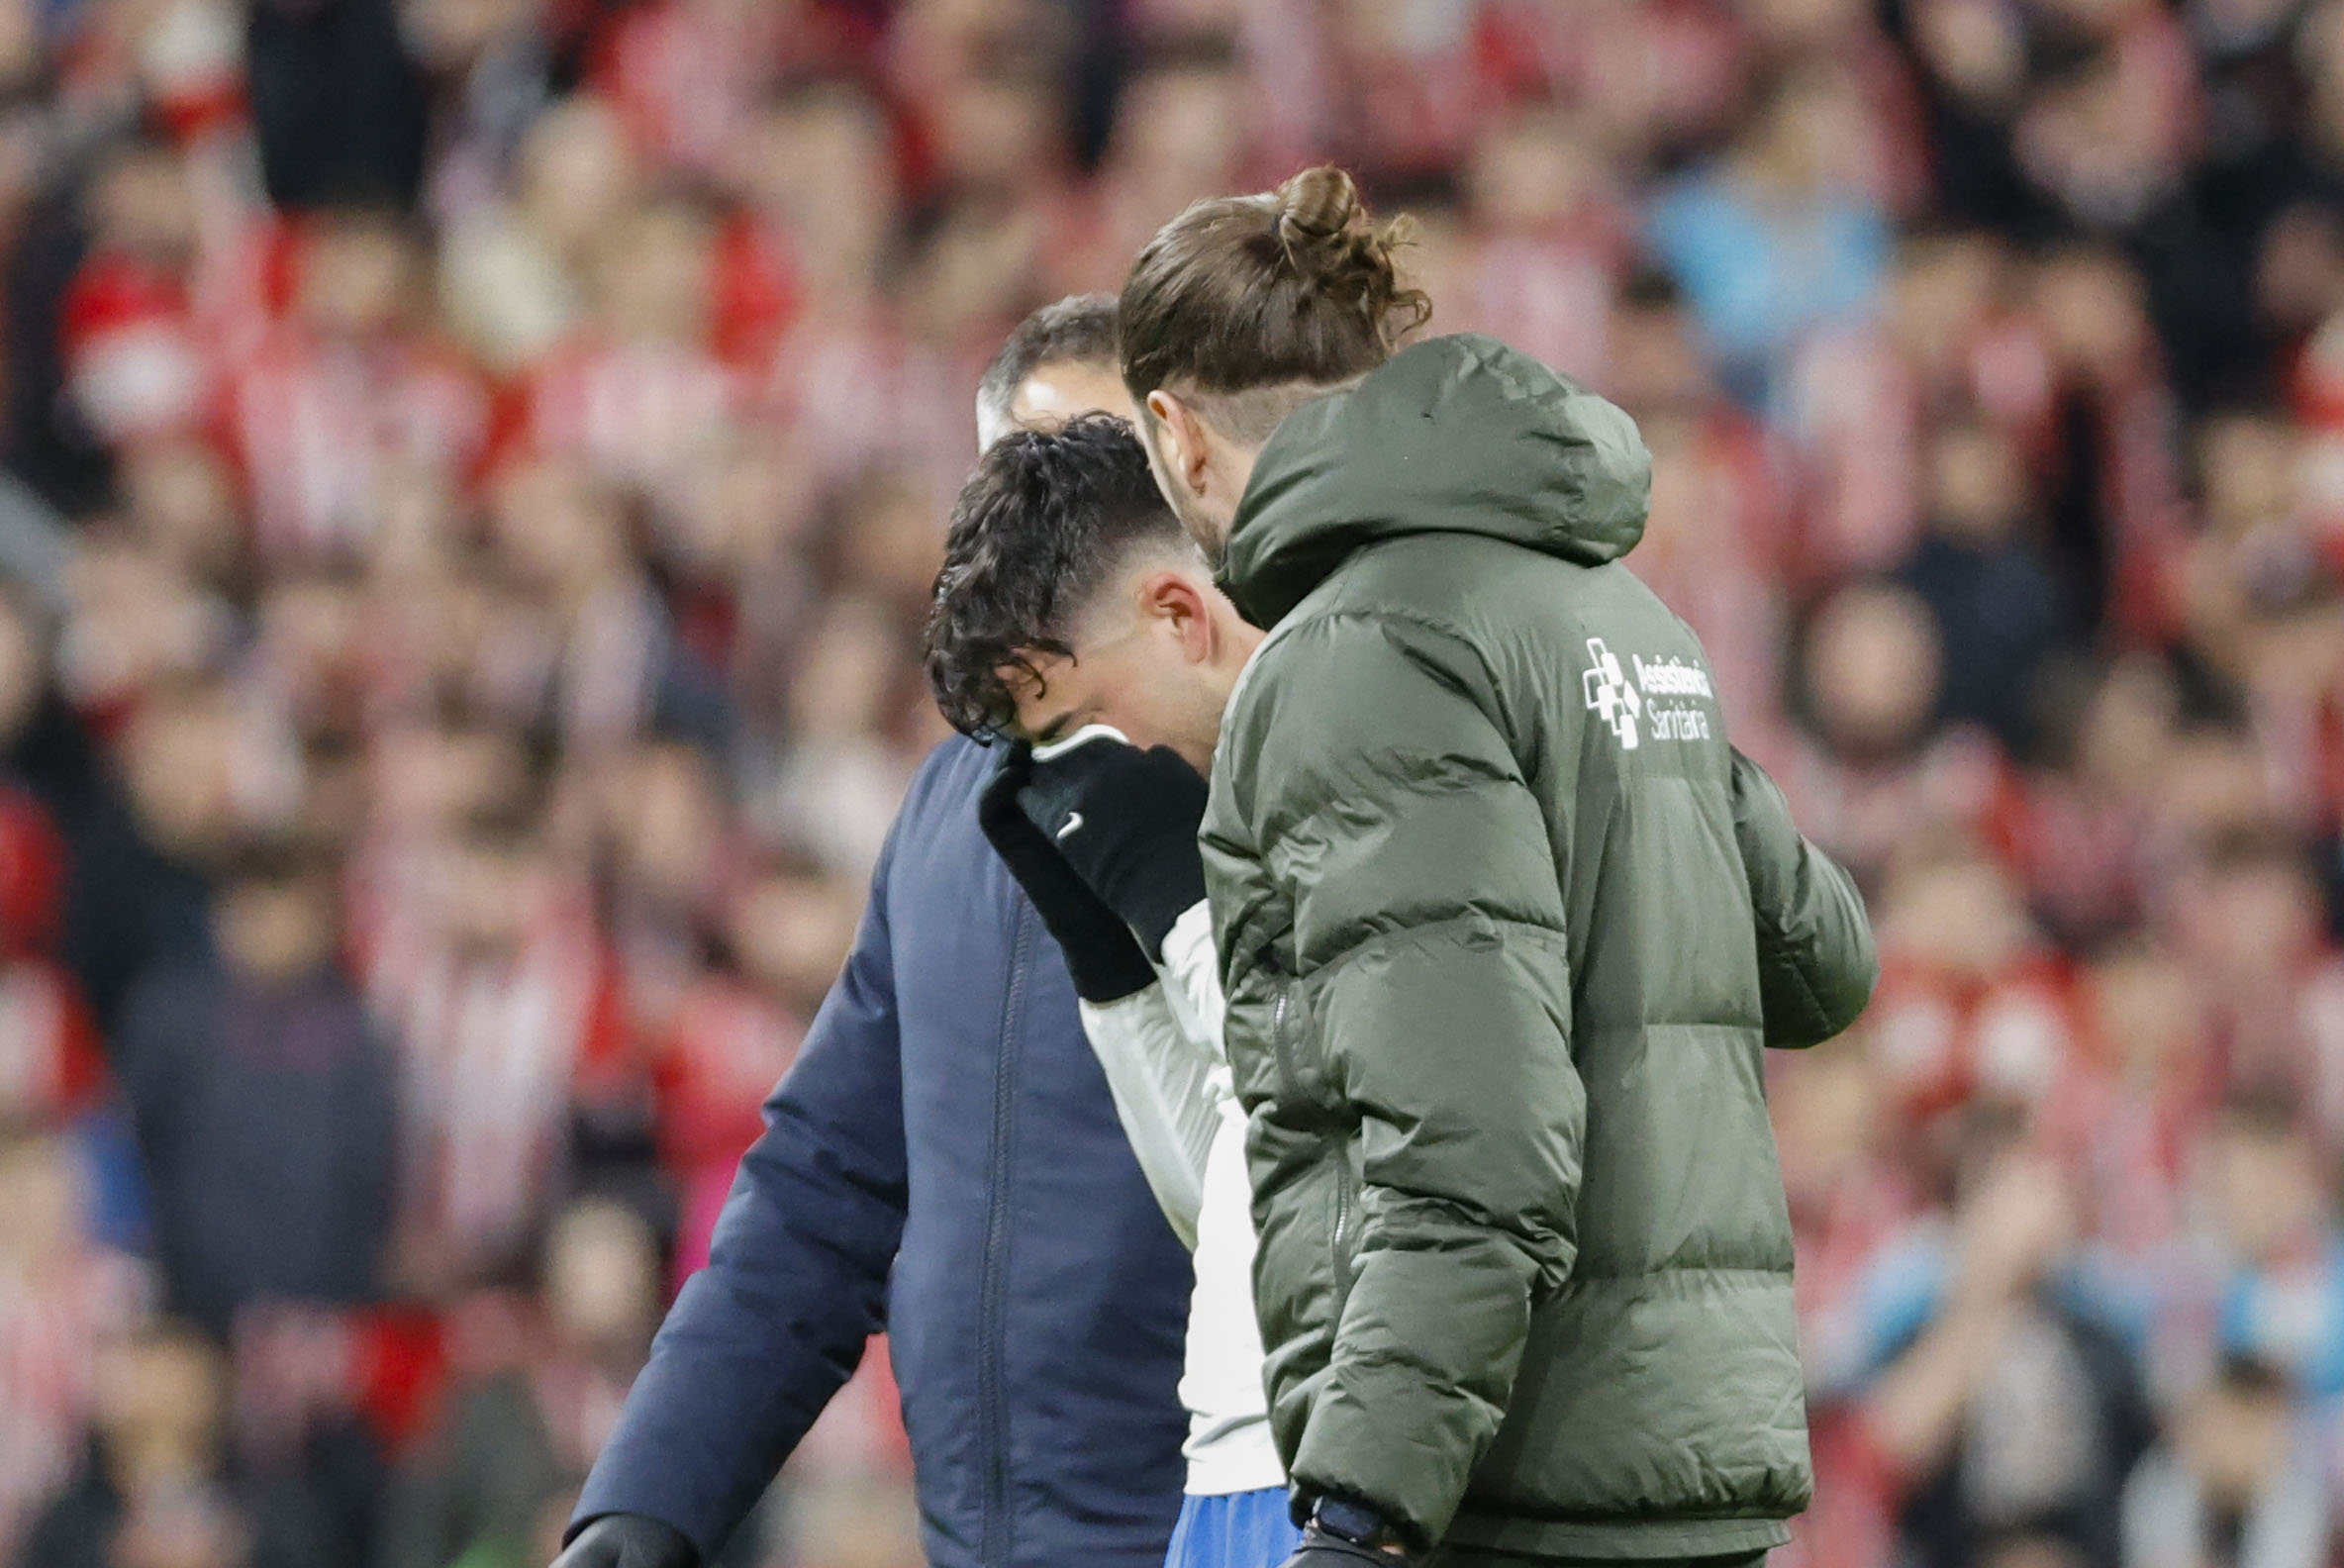 El centrocampista del FC Barcelona Pedri (i) se retira lesionado durante el duelo entre el Athletic Club y el FC Barcelona en el estadio de San Mamés. (Foto Prensa Libre: EFE)